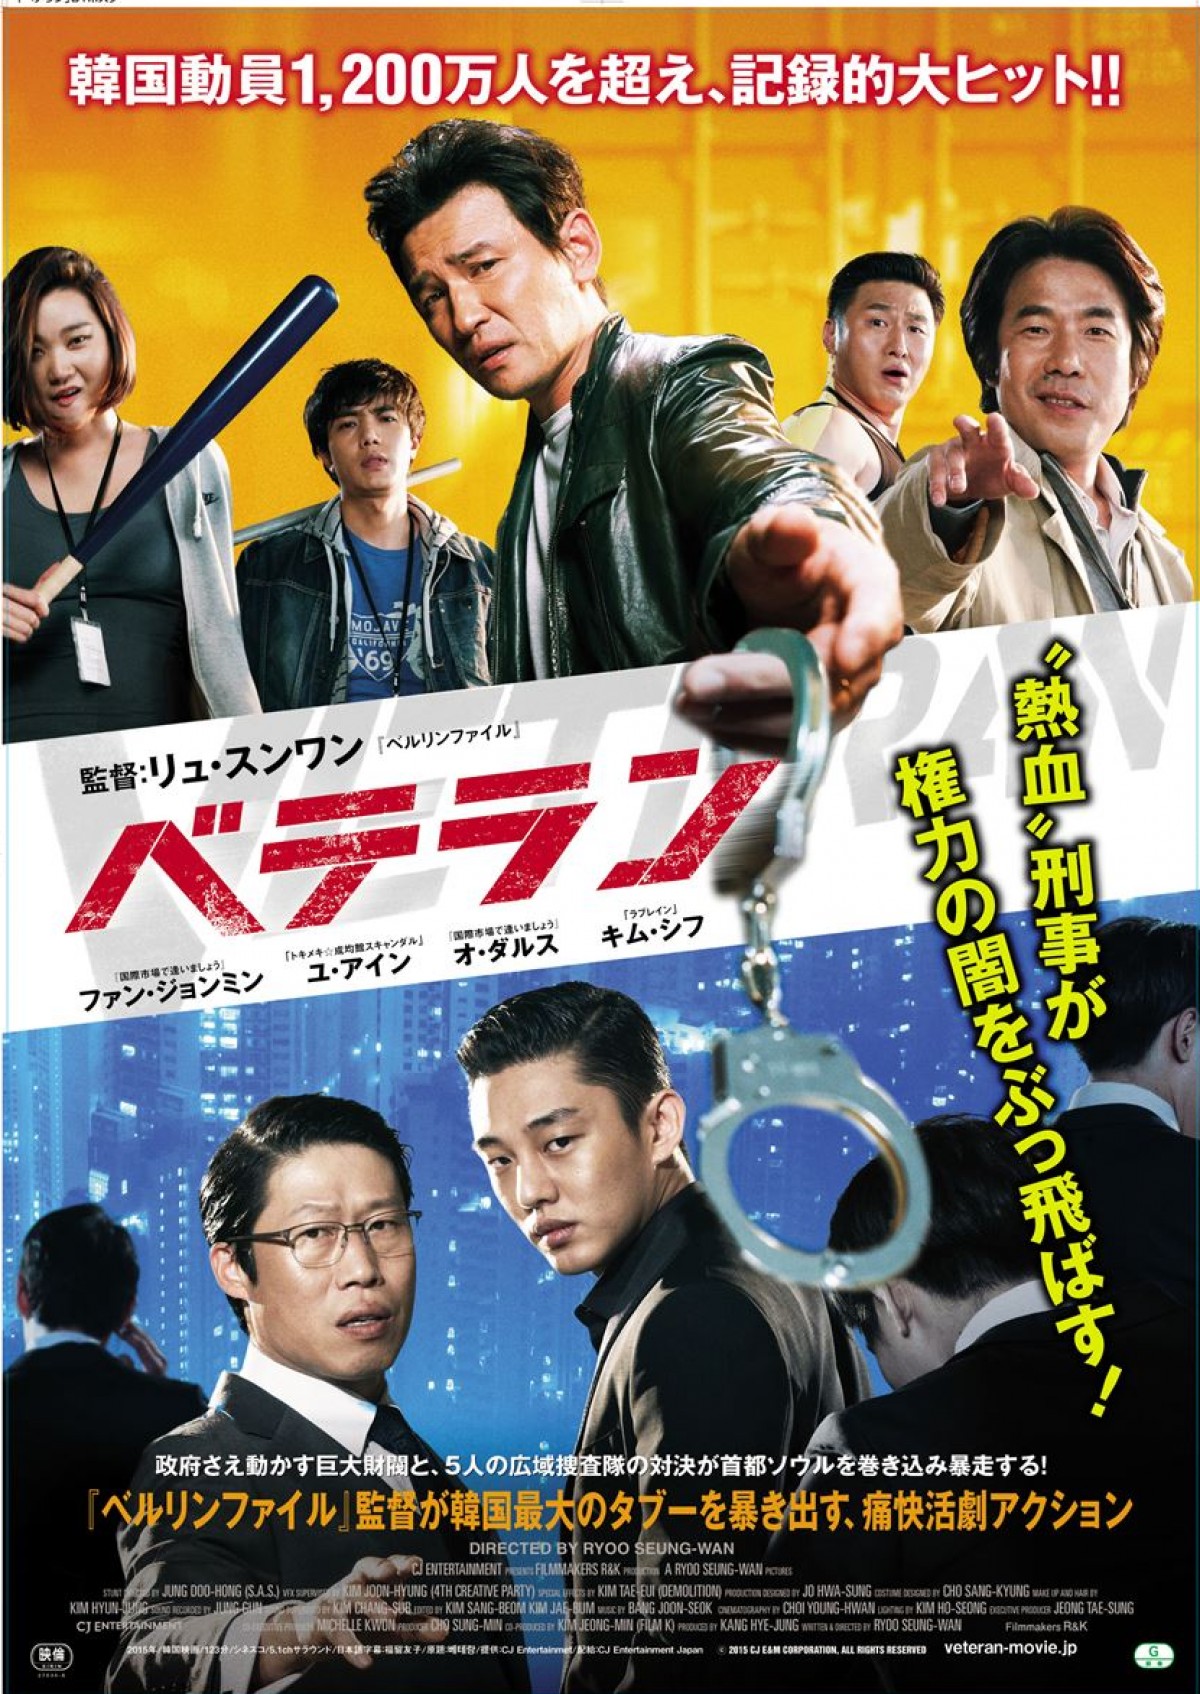 12月12日日本公開『ベテラン』の日本版ポスター